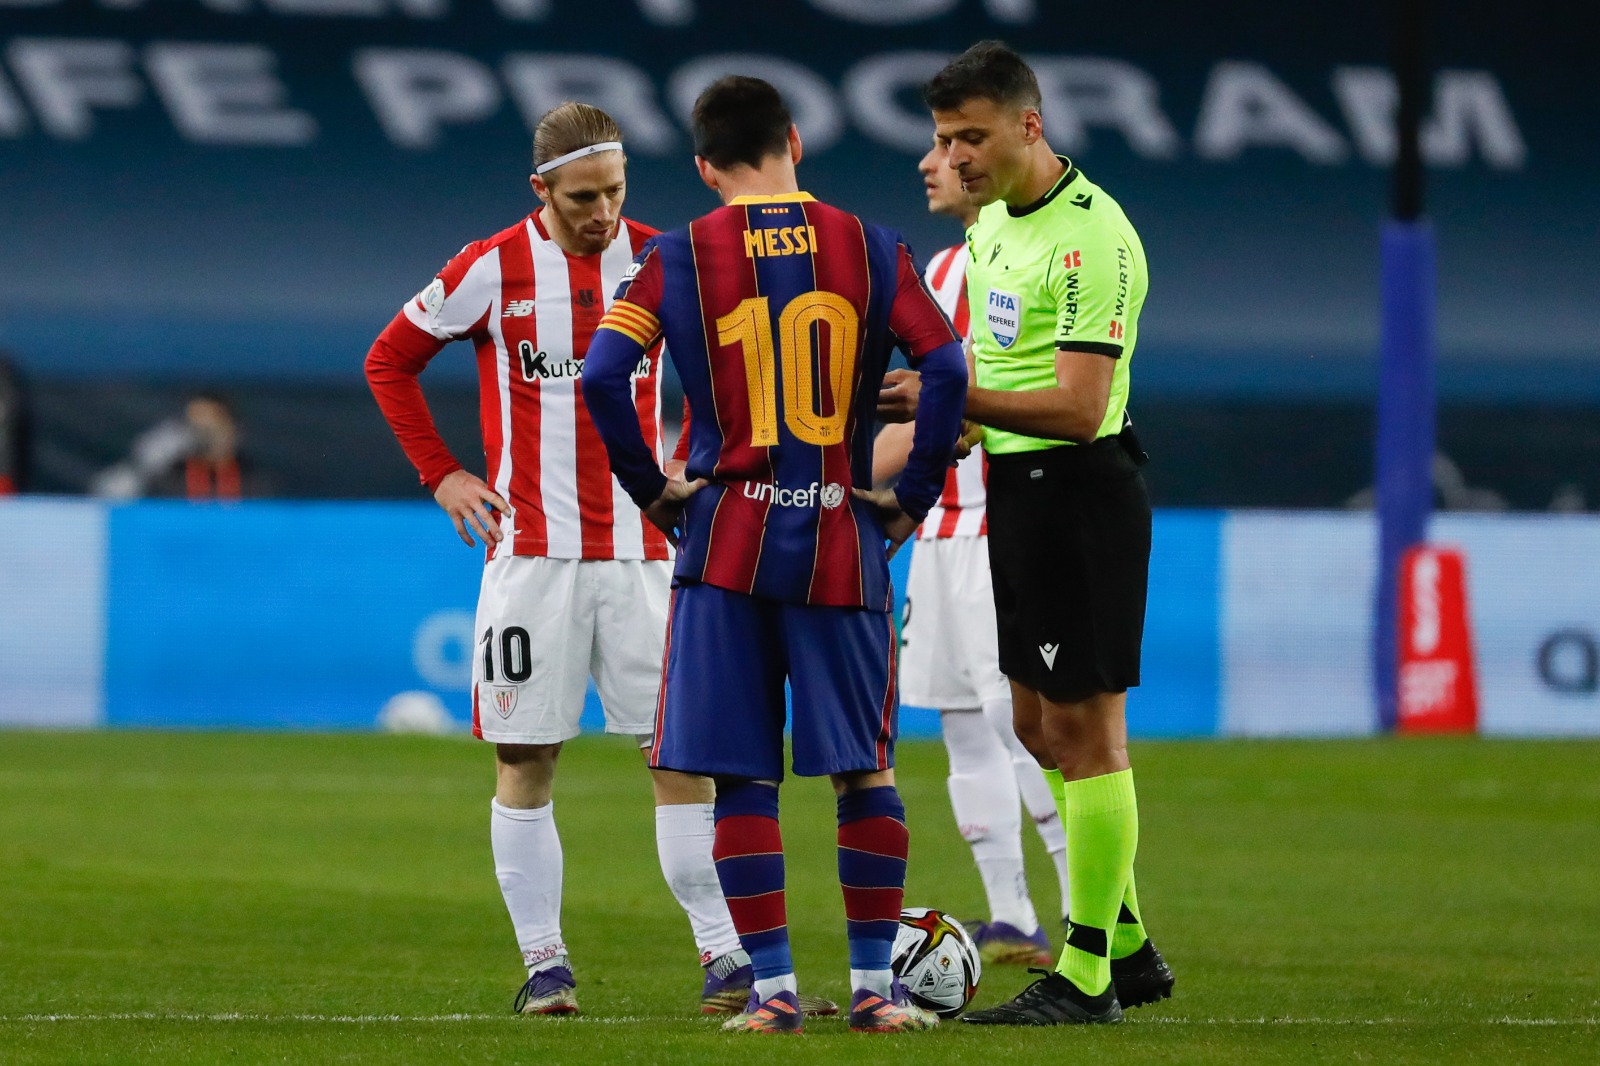 Kartu Merah Karena Memukul Striker Athletic Club, Potensi Hukuman Lionel Messi 4-12 Pertandingan